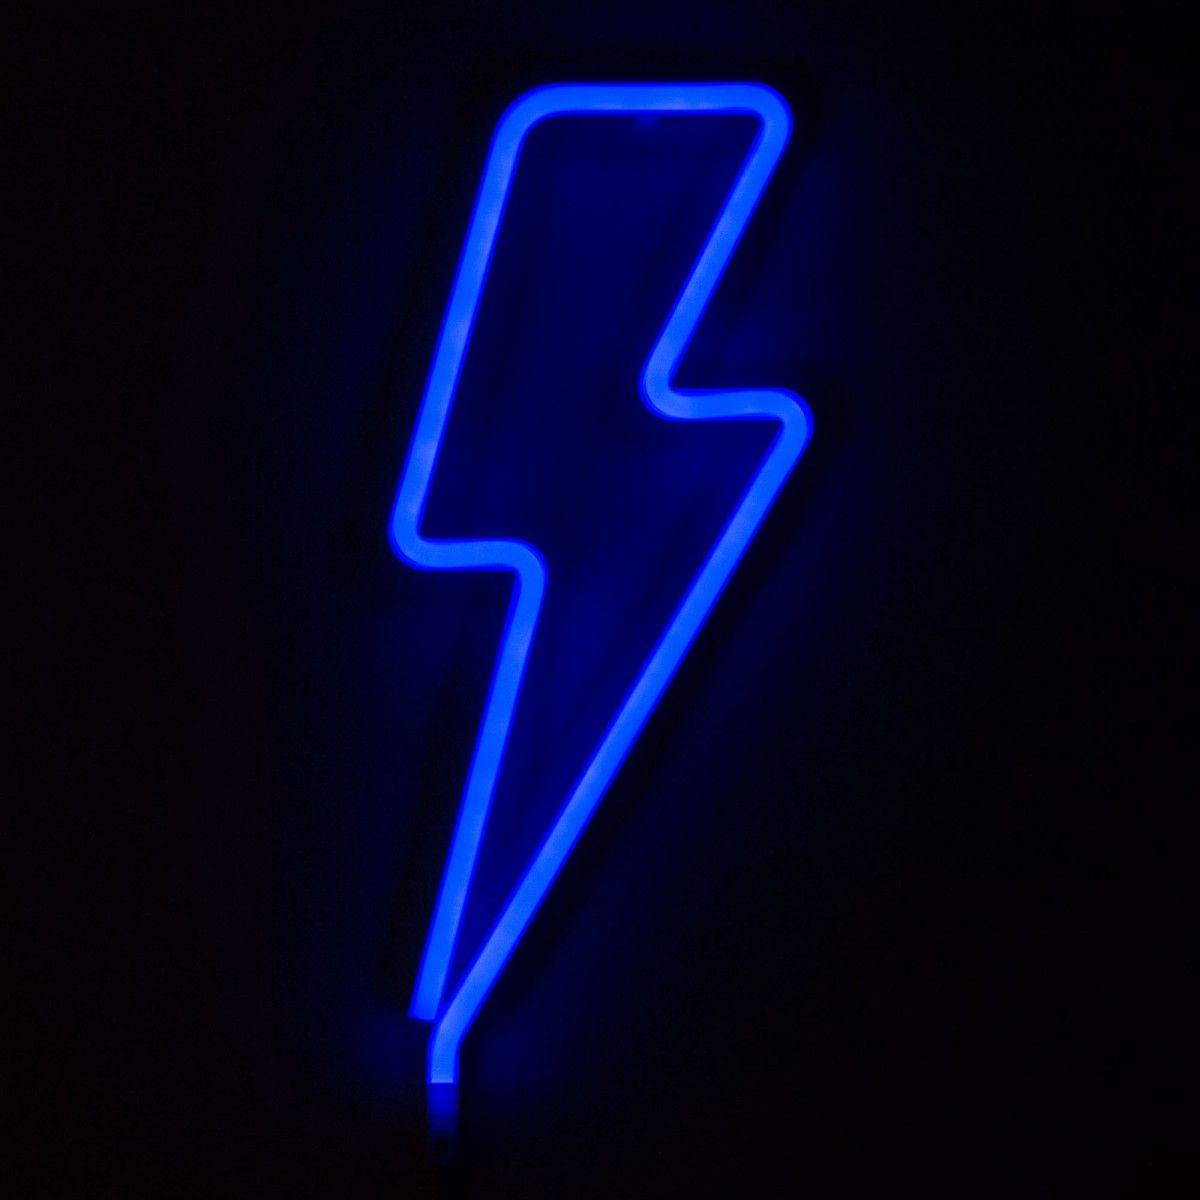 Blue Lightning Bolt Logo - A Little Lovely Company Blue Lightning Bolt Neon-Style Light ...